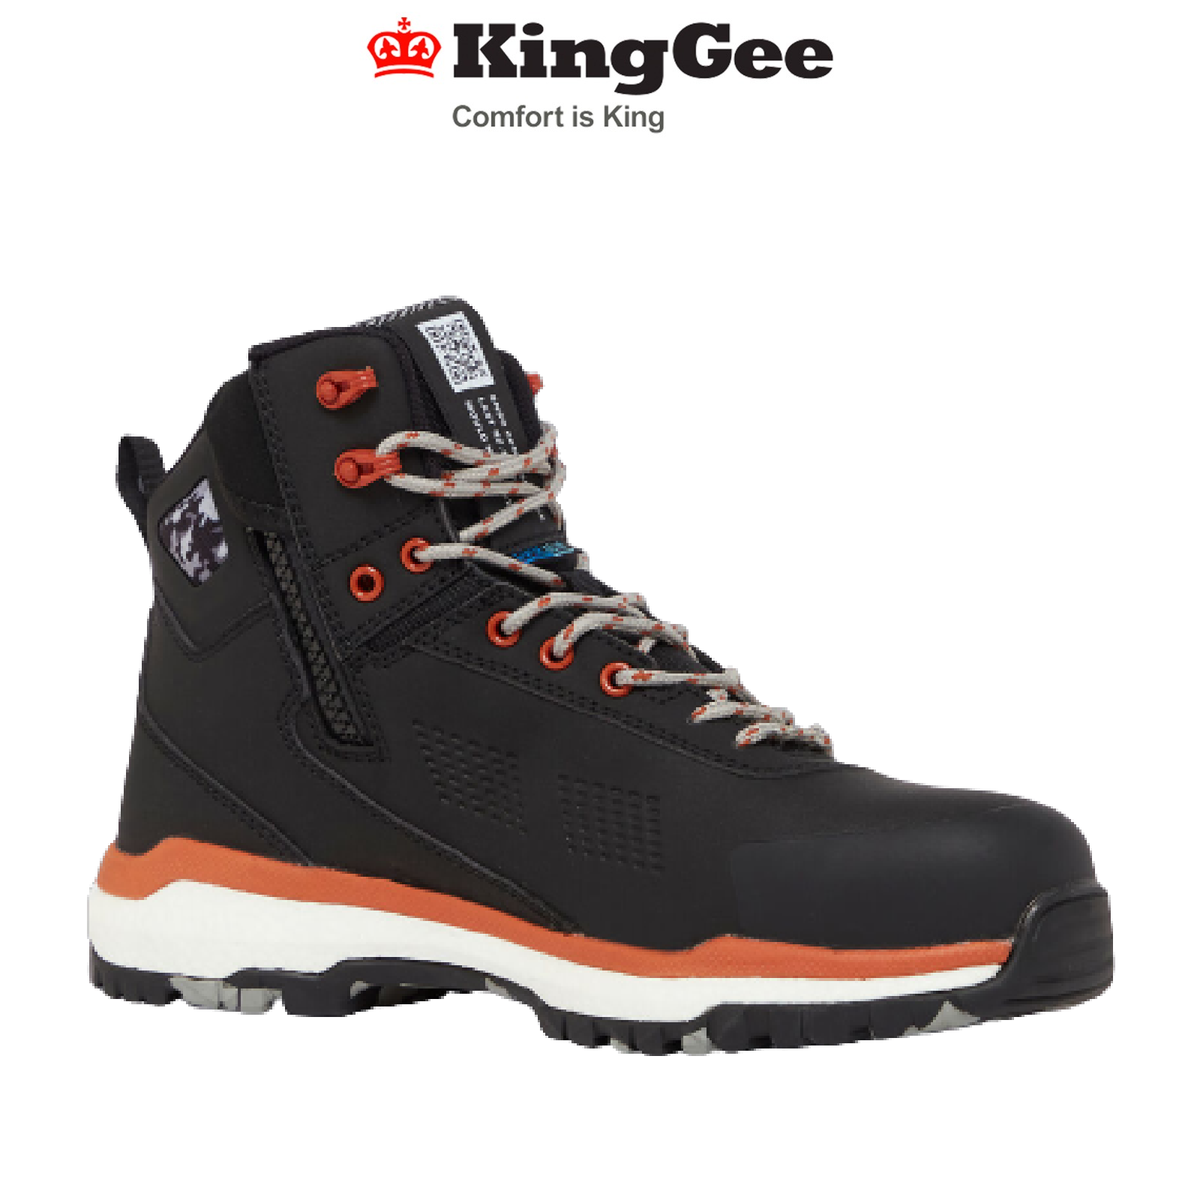 KingGee Mens Terra Firma Hybrid Safety Microfiber Work Boots Light Weight K27951